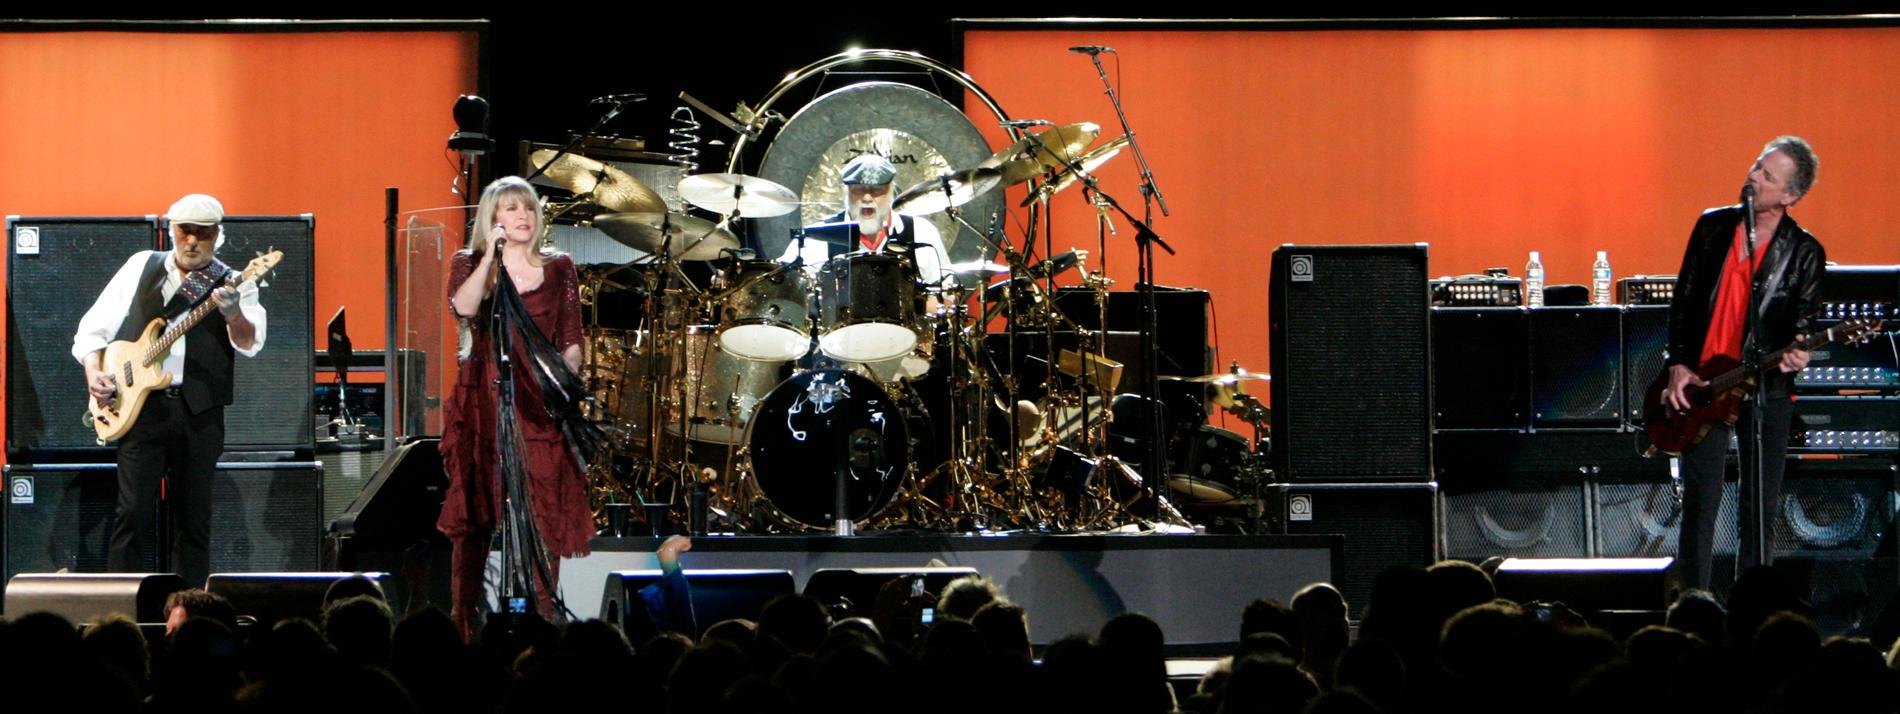 Brett Tuggle spelade med Fleetwood Mac mellan 1997 och 2017. Spelningen på bilden är från 2009. Arkivbild.